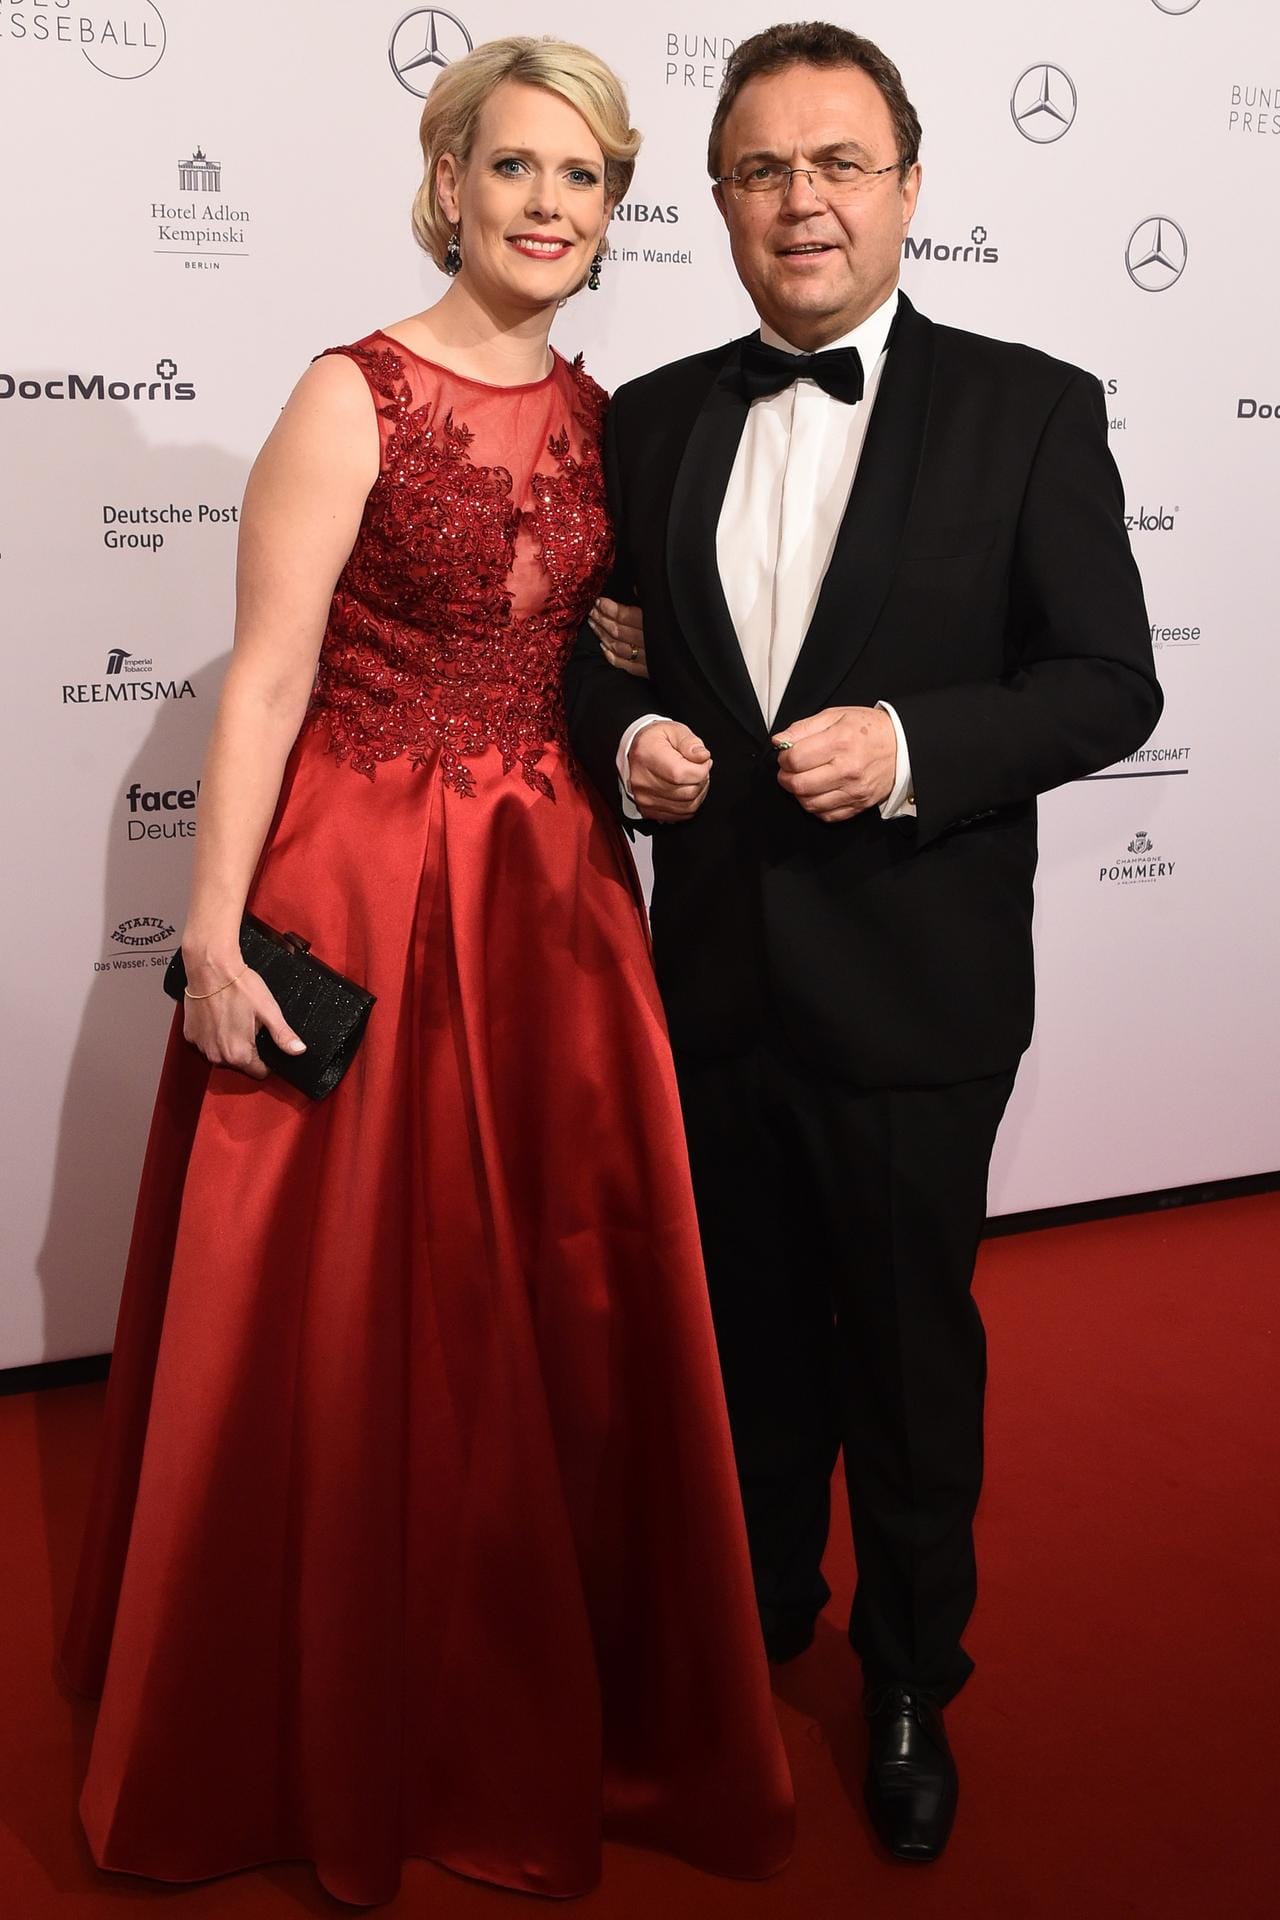 Der ehemalige Innenminister Hans-Peter Friedrich (CSU) mit seiner Frau Diana Troglauer